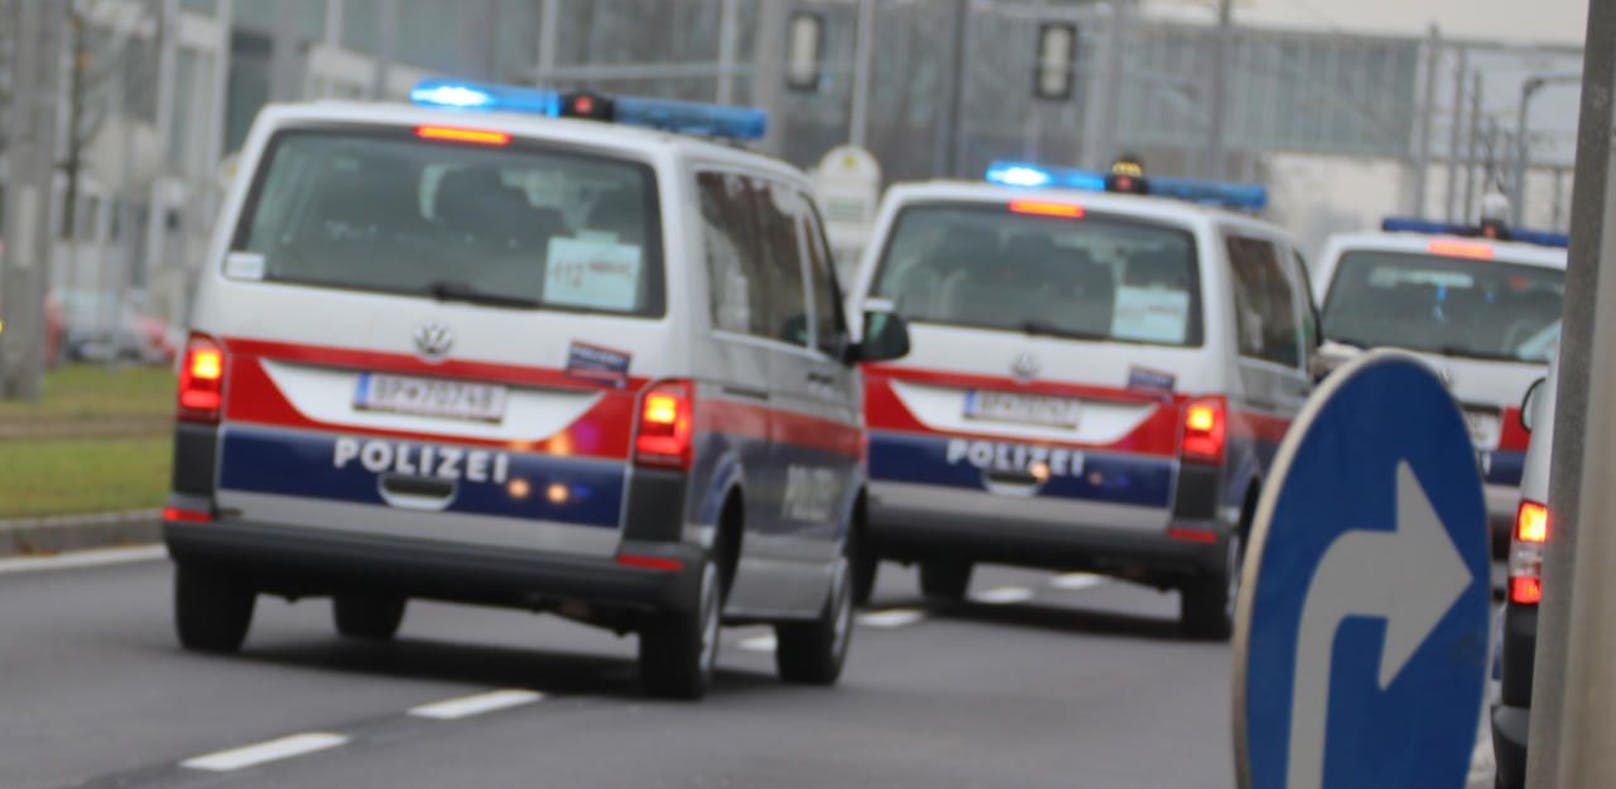 Brutale Attacke eines Jugendlichen in Salzburg - nun fasste er bedingte Haft aus